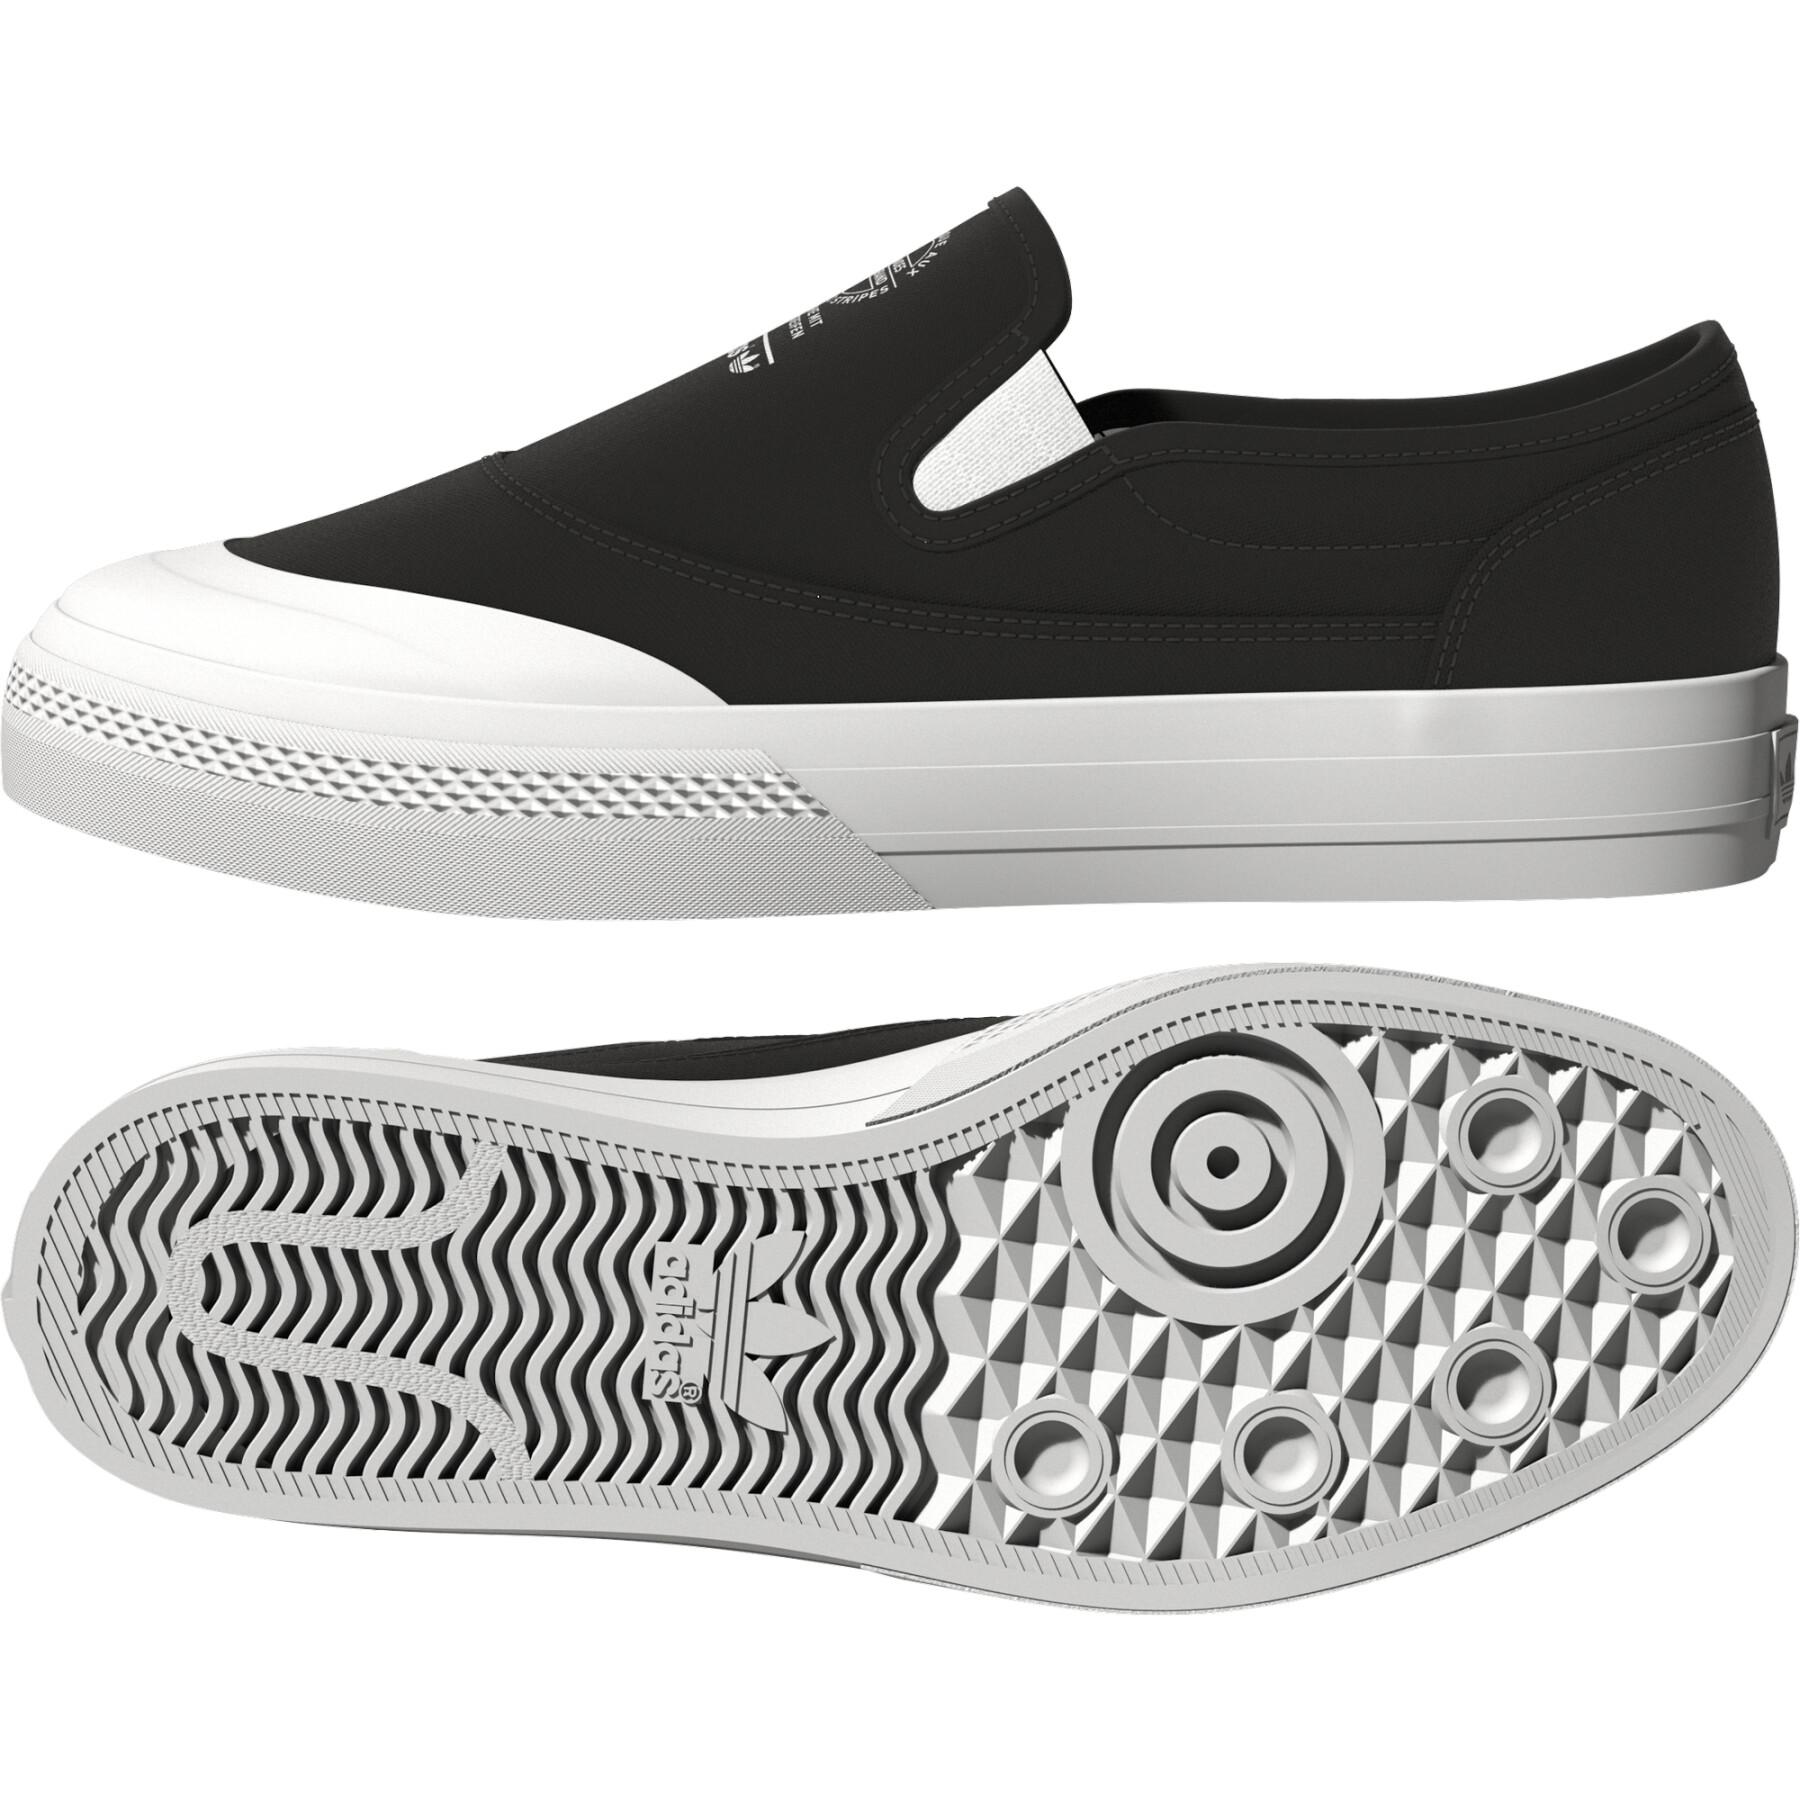 Sneakers shoes nizza rf slip s23722 adidas Originals pour homme en coloris Noir Homme Baskets Baskets adidas Originals 